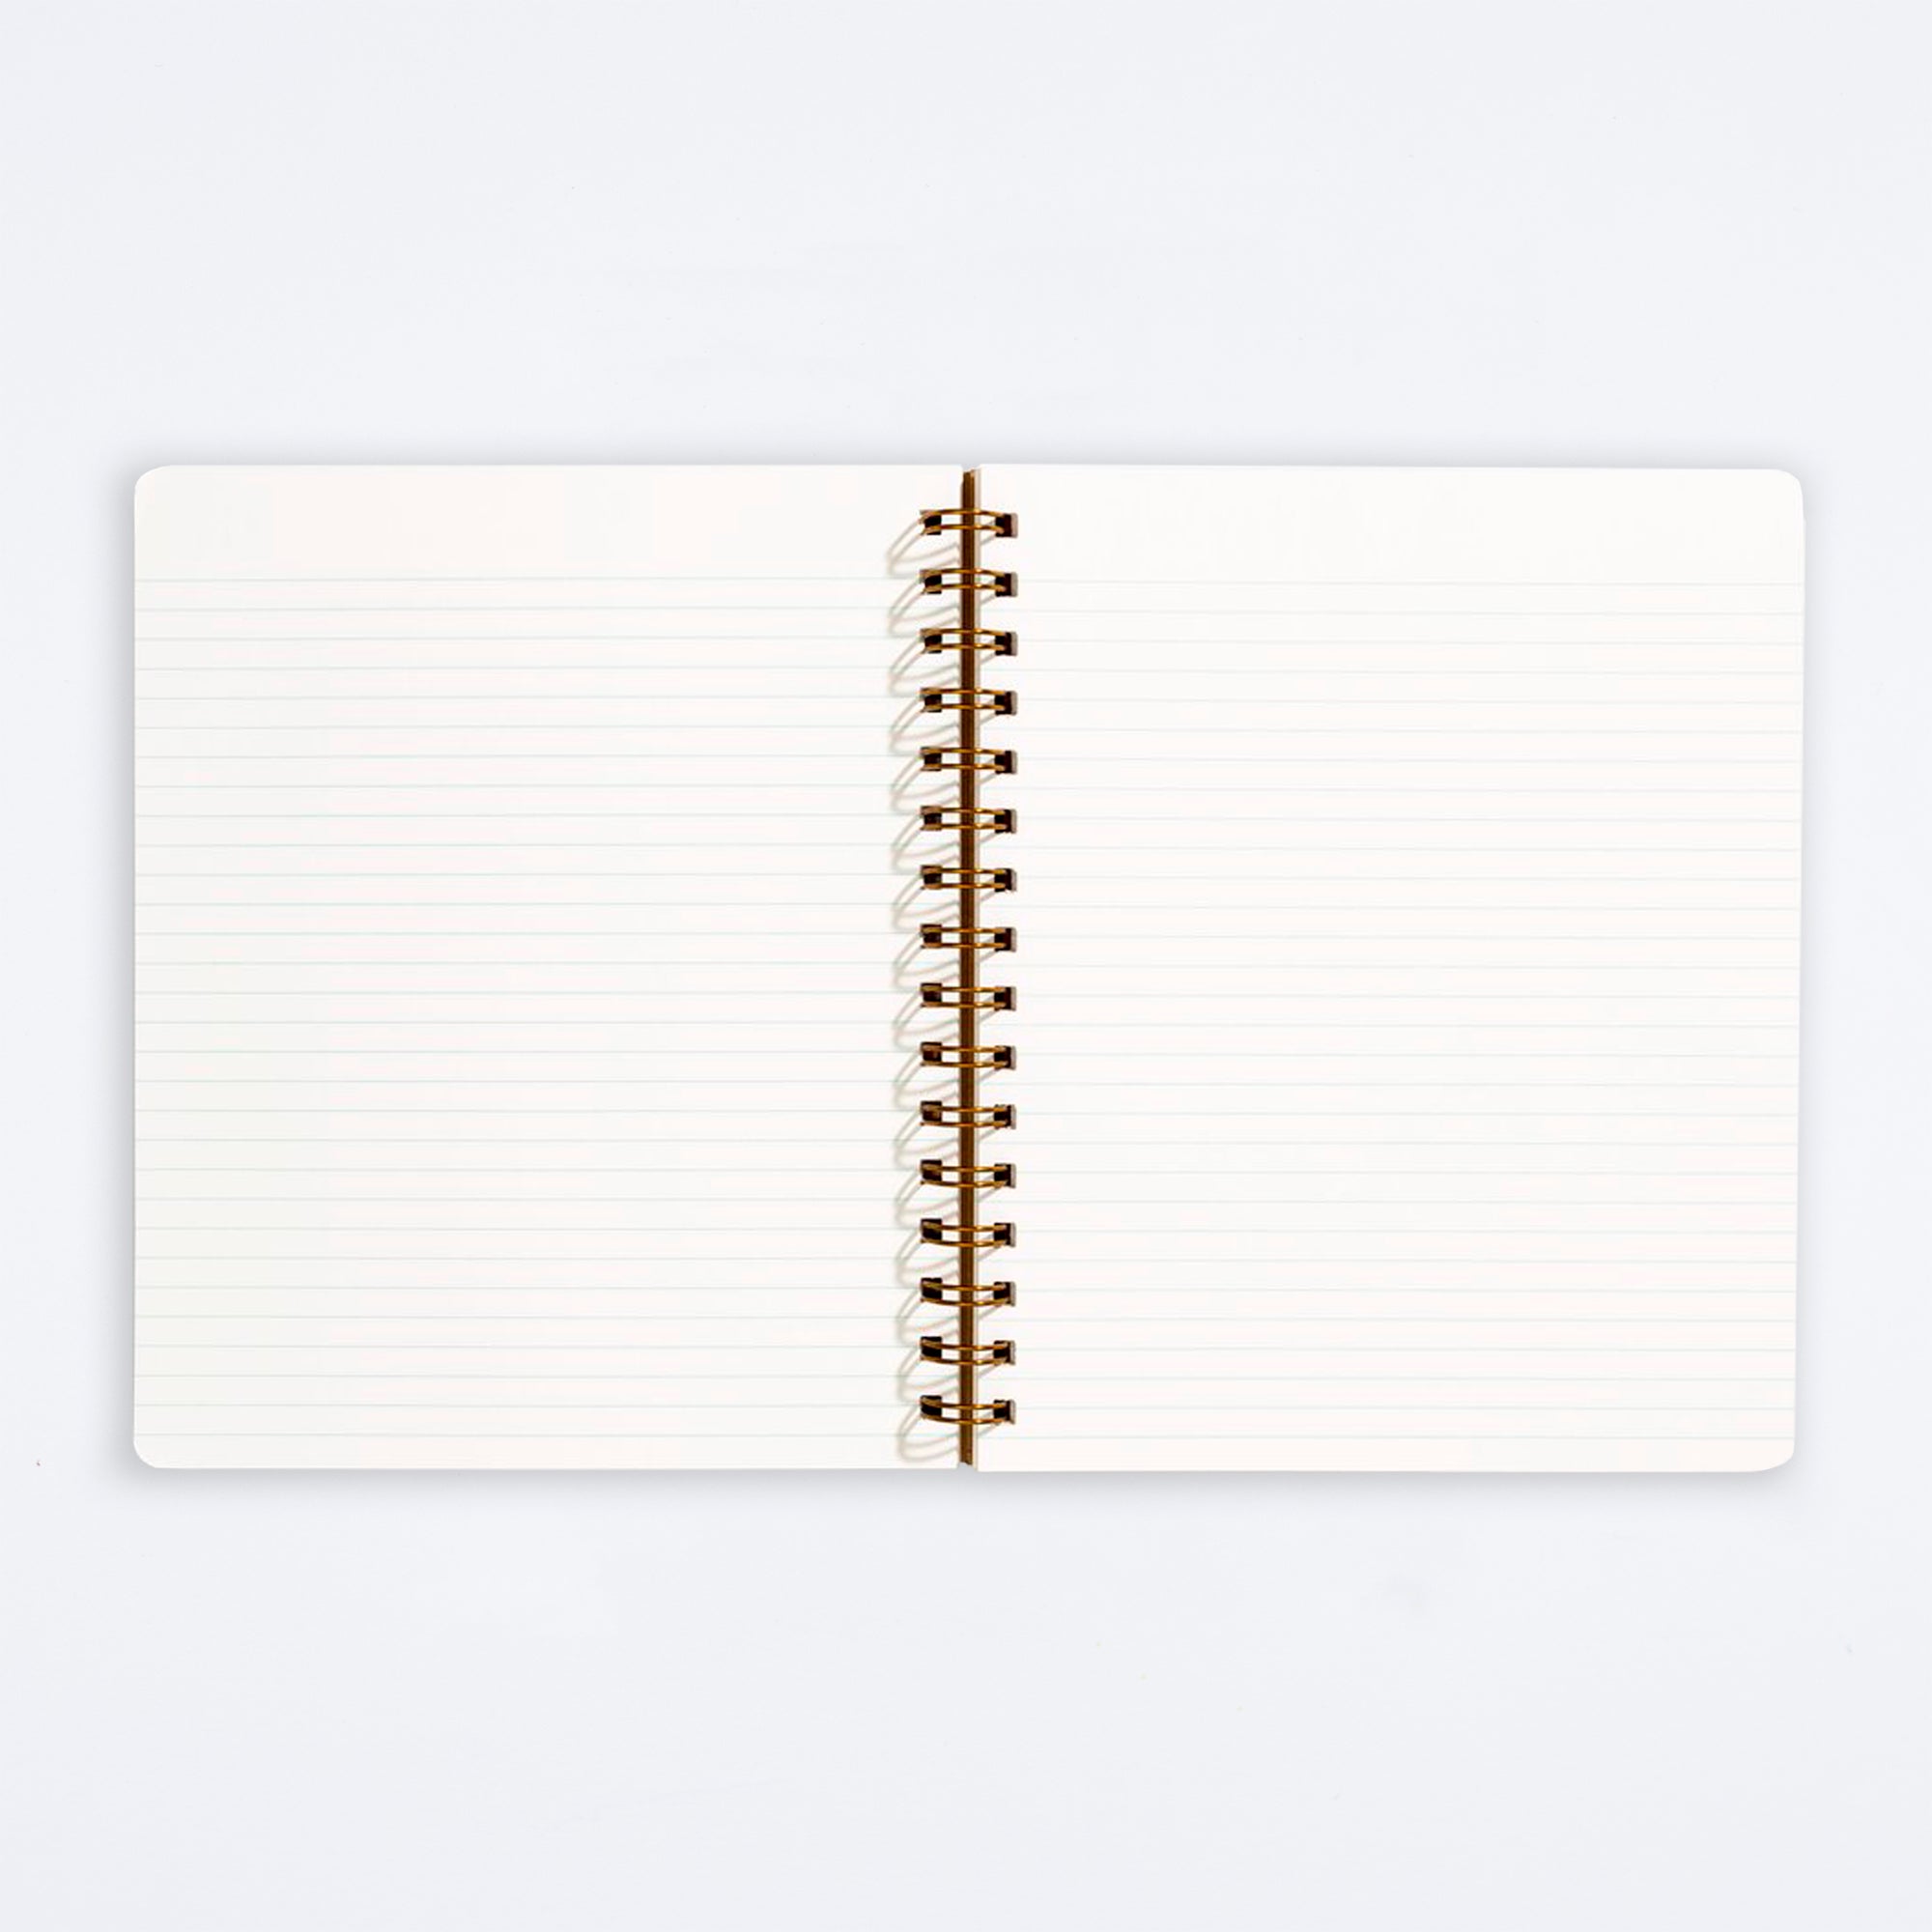 Mint Standard Notebook